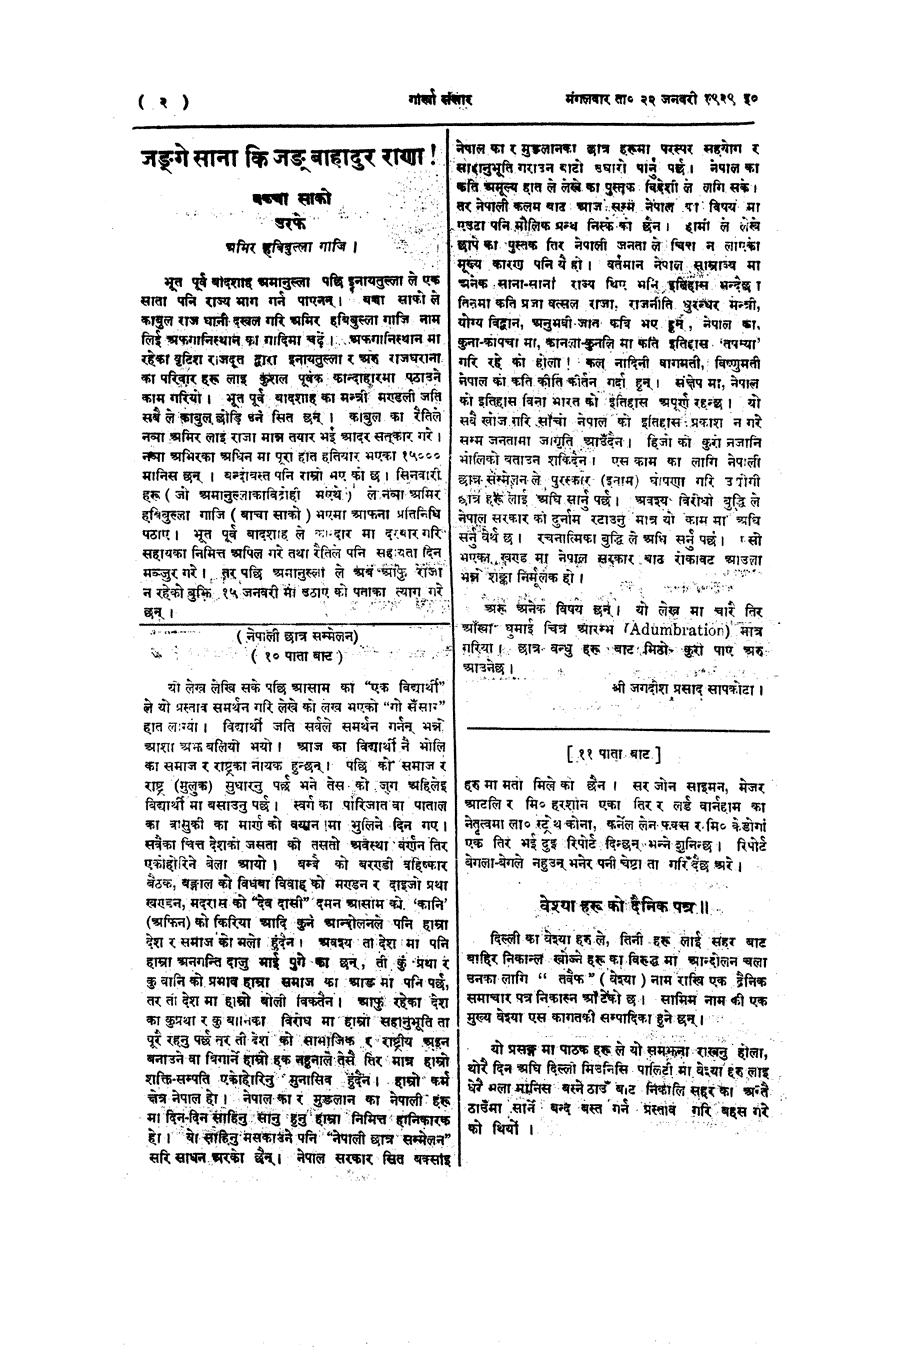 Gorkha Sansar, 22 Jan 1929, page 2